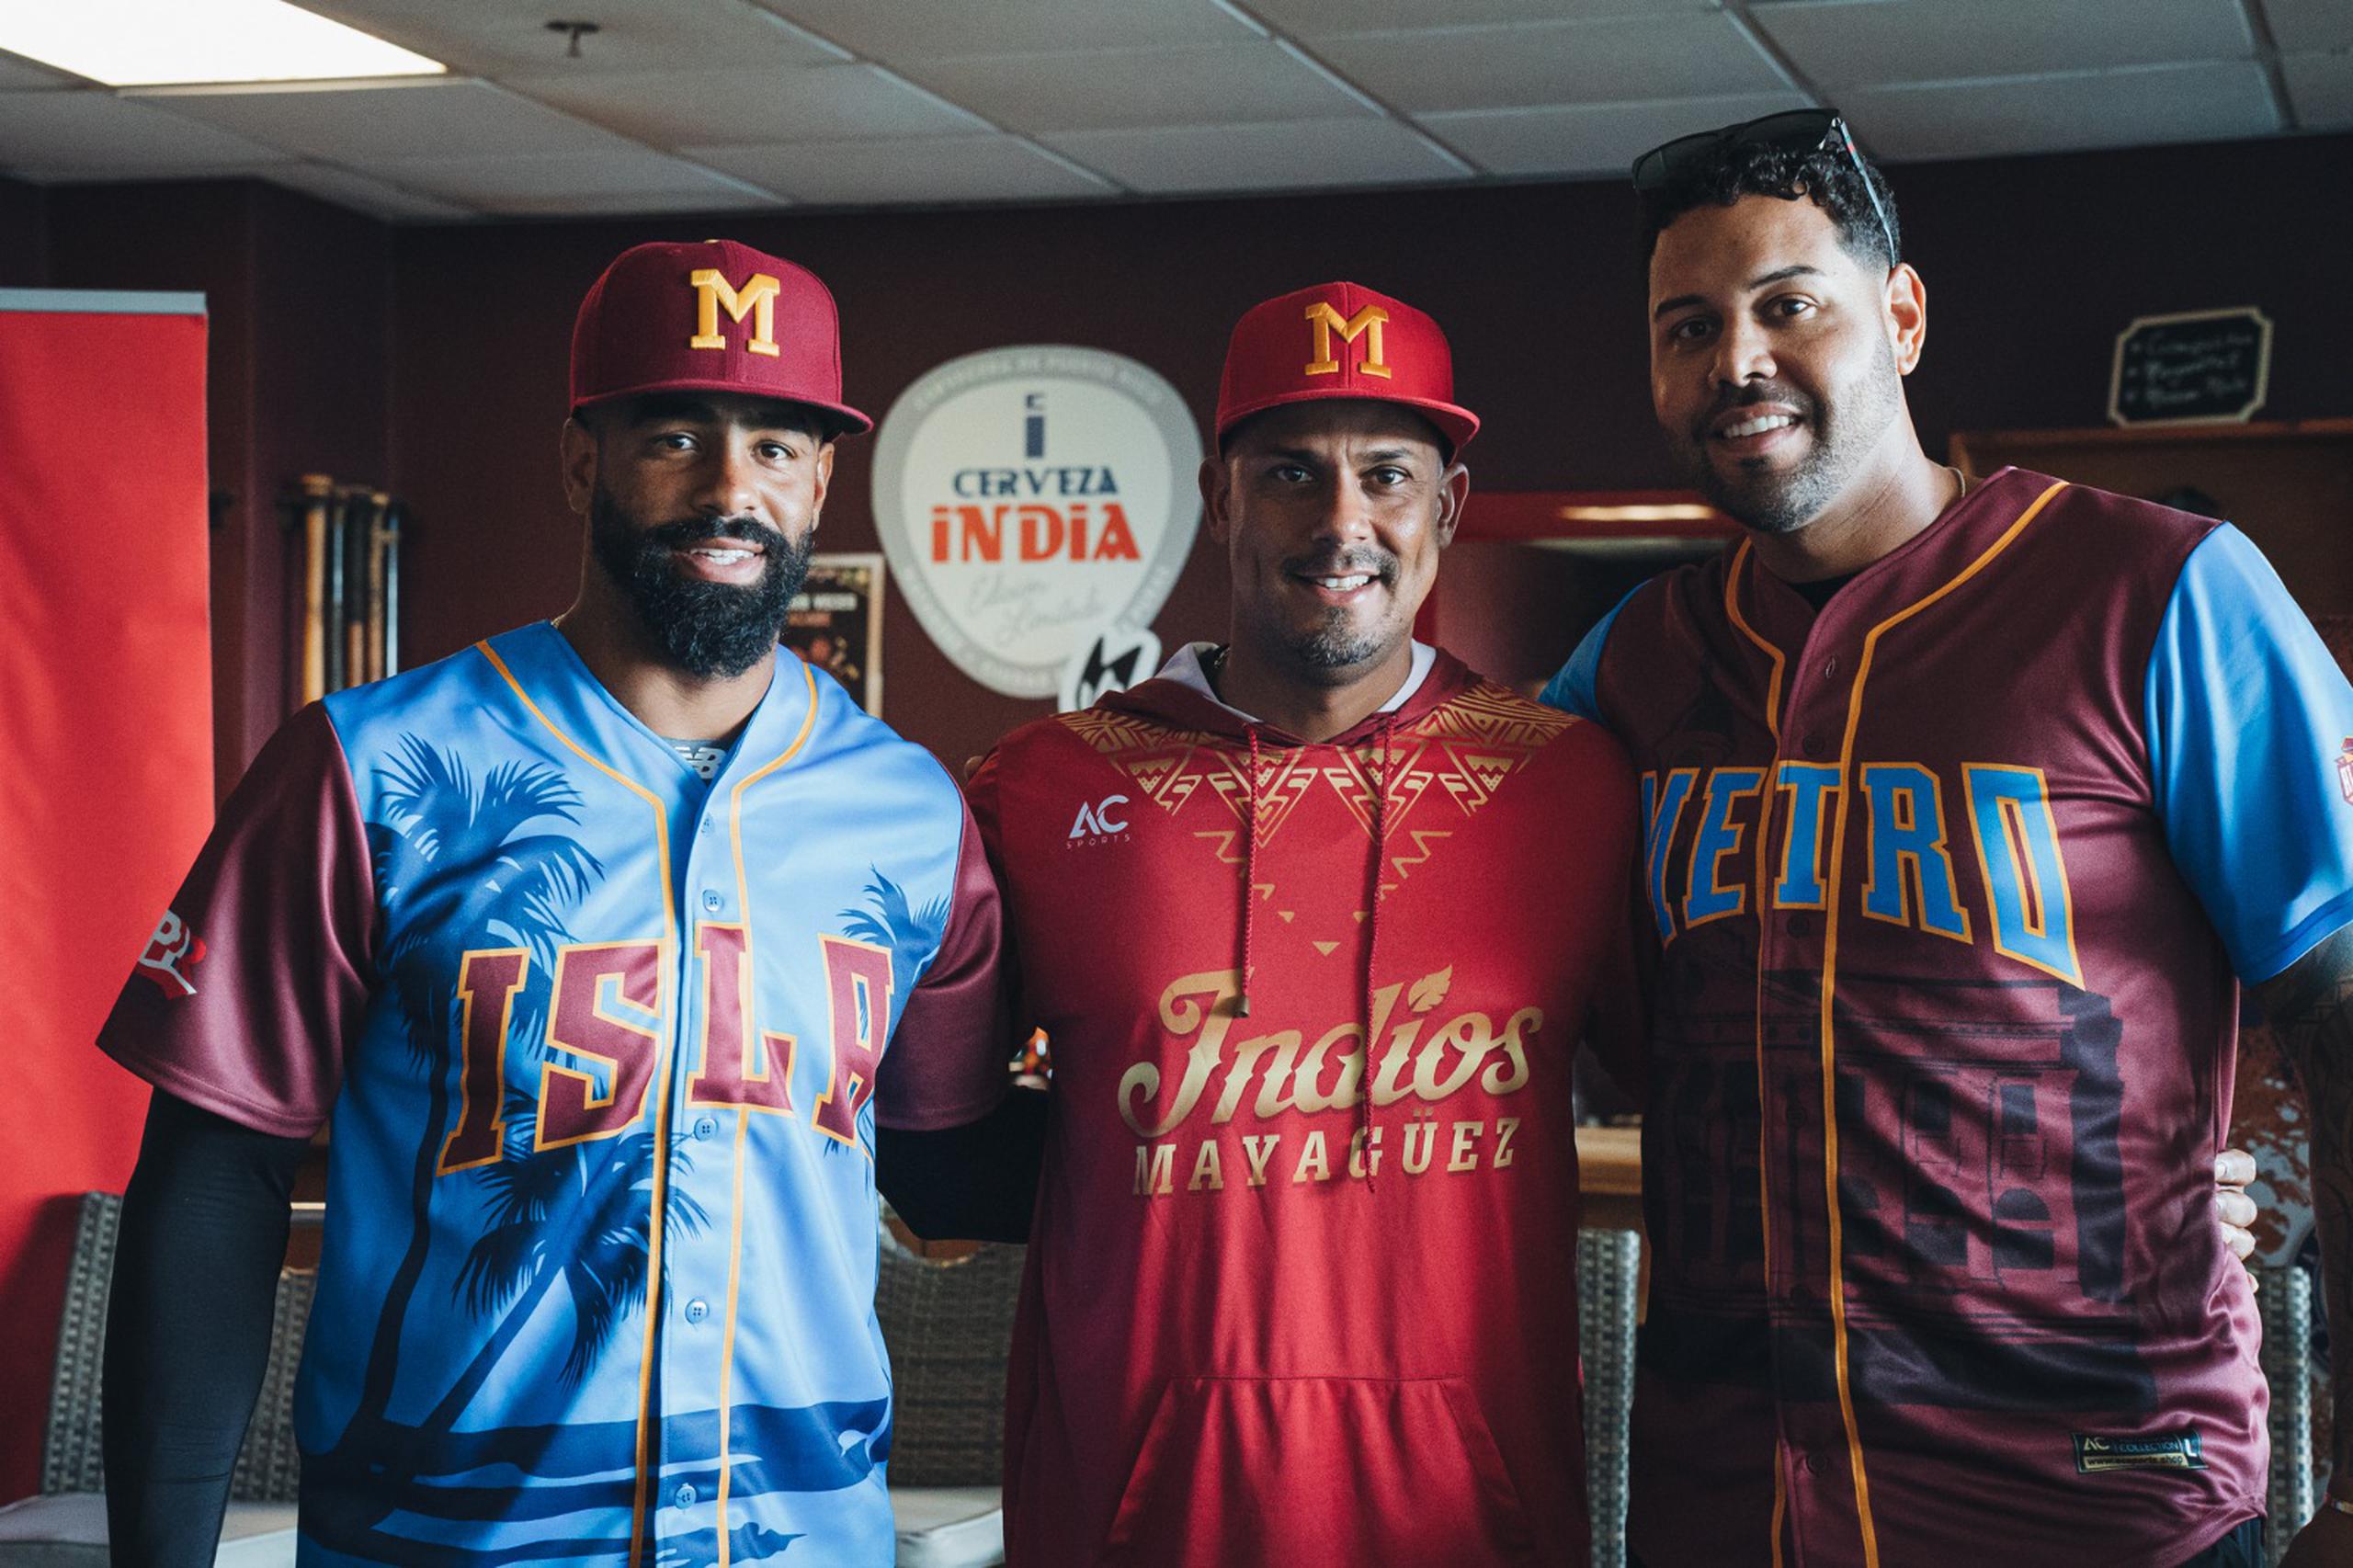 Desde la izquierda, Henry Ramos con la camisa del equipo Isla, el dirigente de los Indios, Luis Matos, y el lanzador Adalberto Flores con la camisa del equipo Metro.